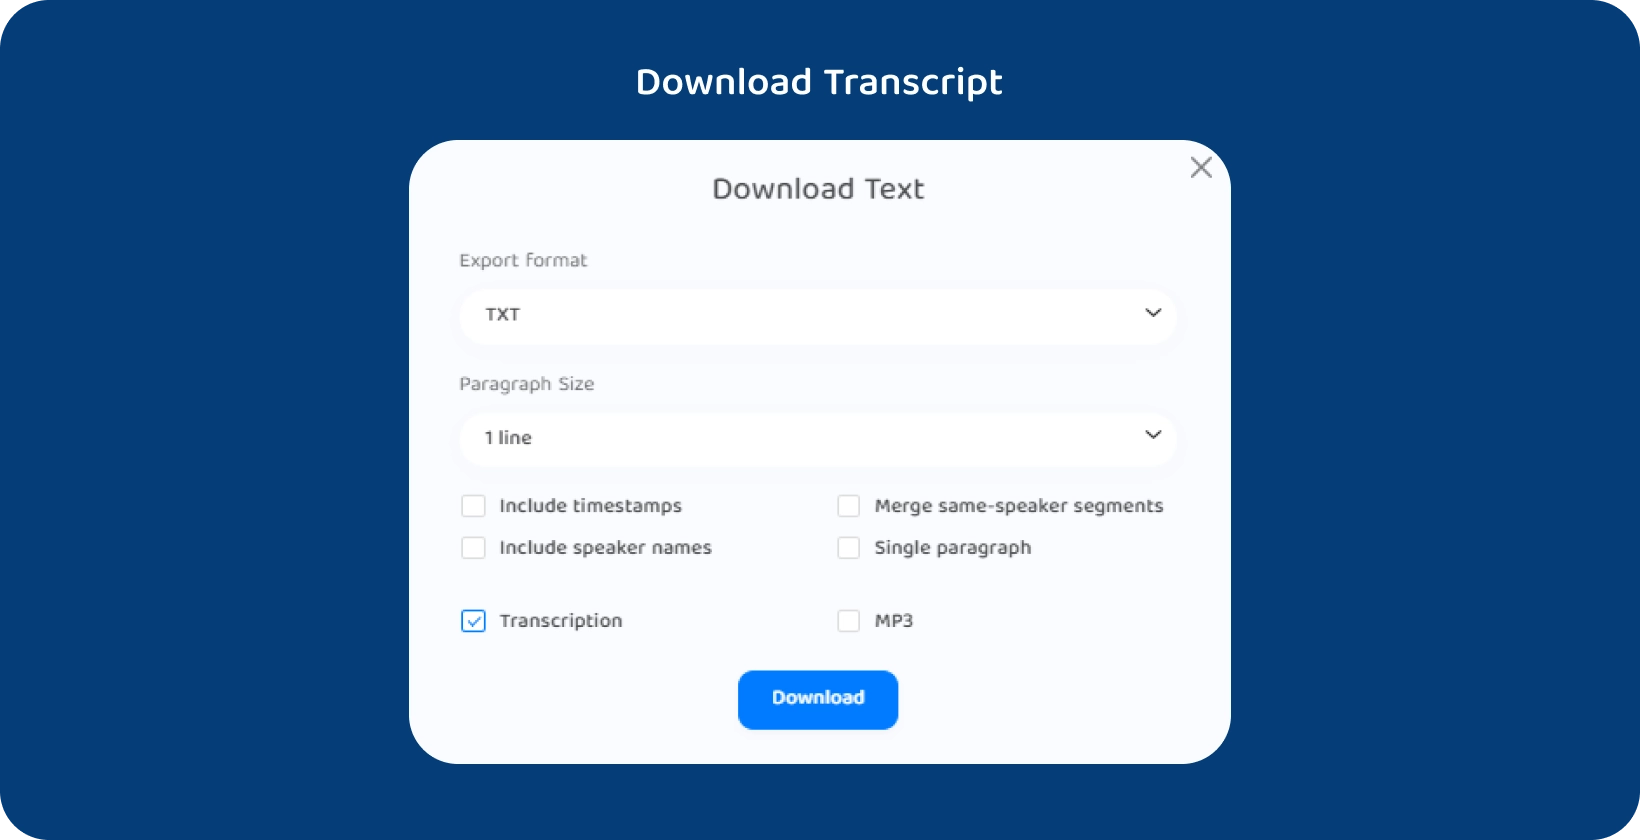 Transkriptor इंटरफ़ेस एक लिखित व्याख्यान के पाठ को डाउनलोड करने के लिए विकल्प दिखा रहा है।